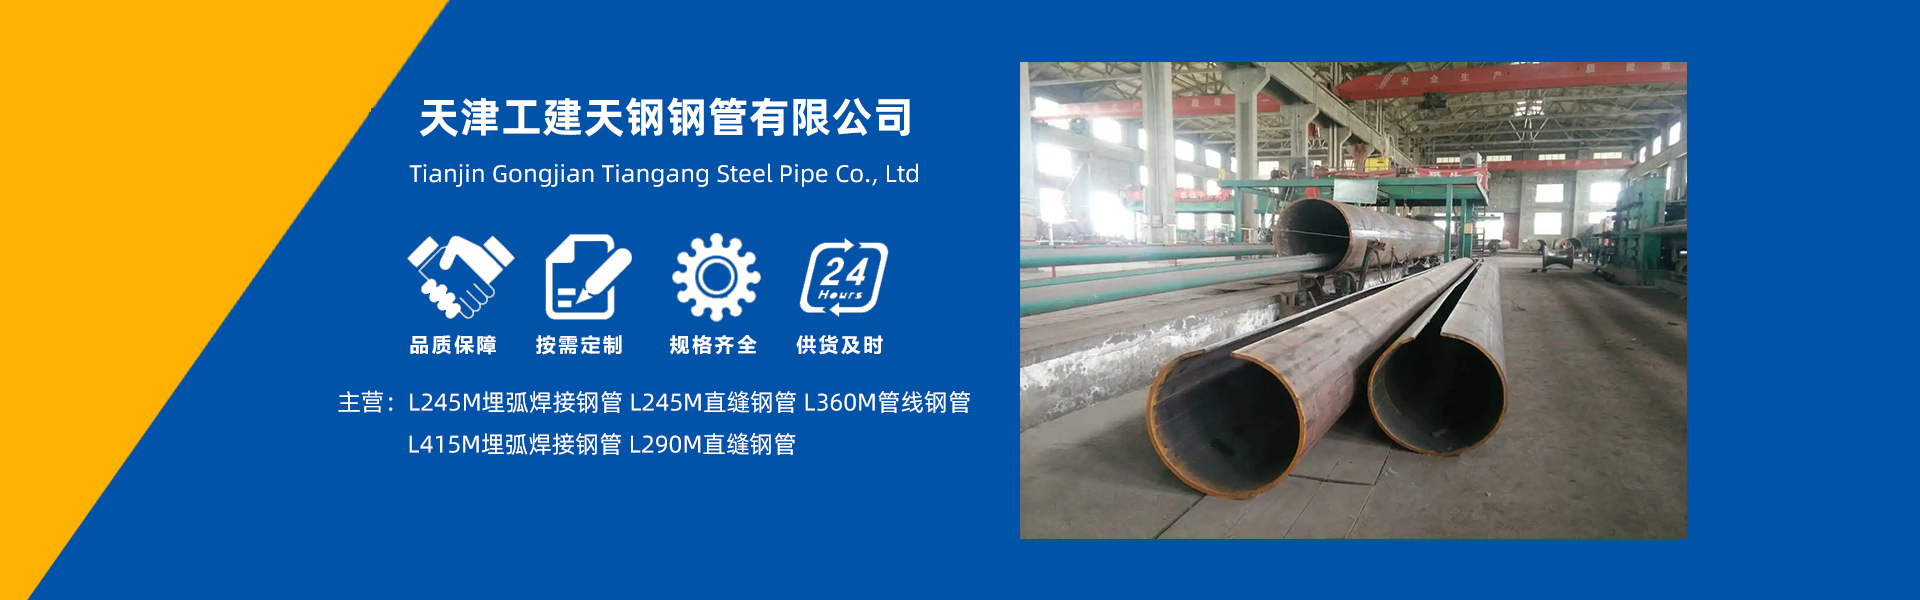 天津工建天鋼-L245M-L415M-埋弧焊接鋼管,L245M-L290M-直縫鋼管,L360M管線鋼管